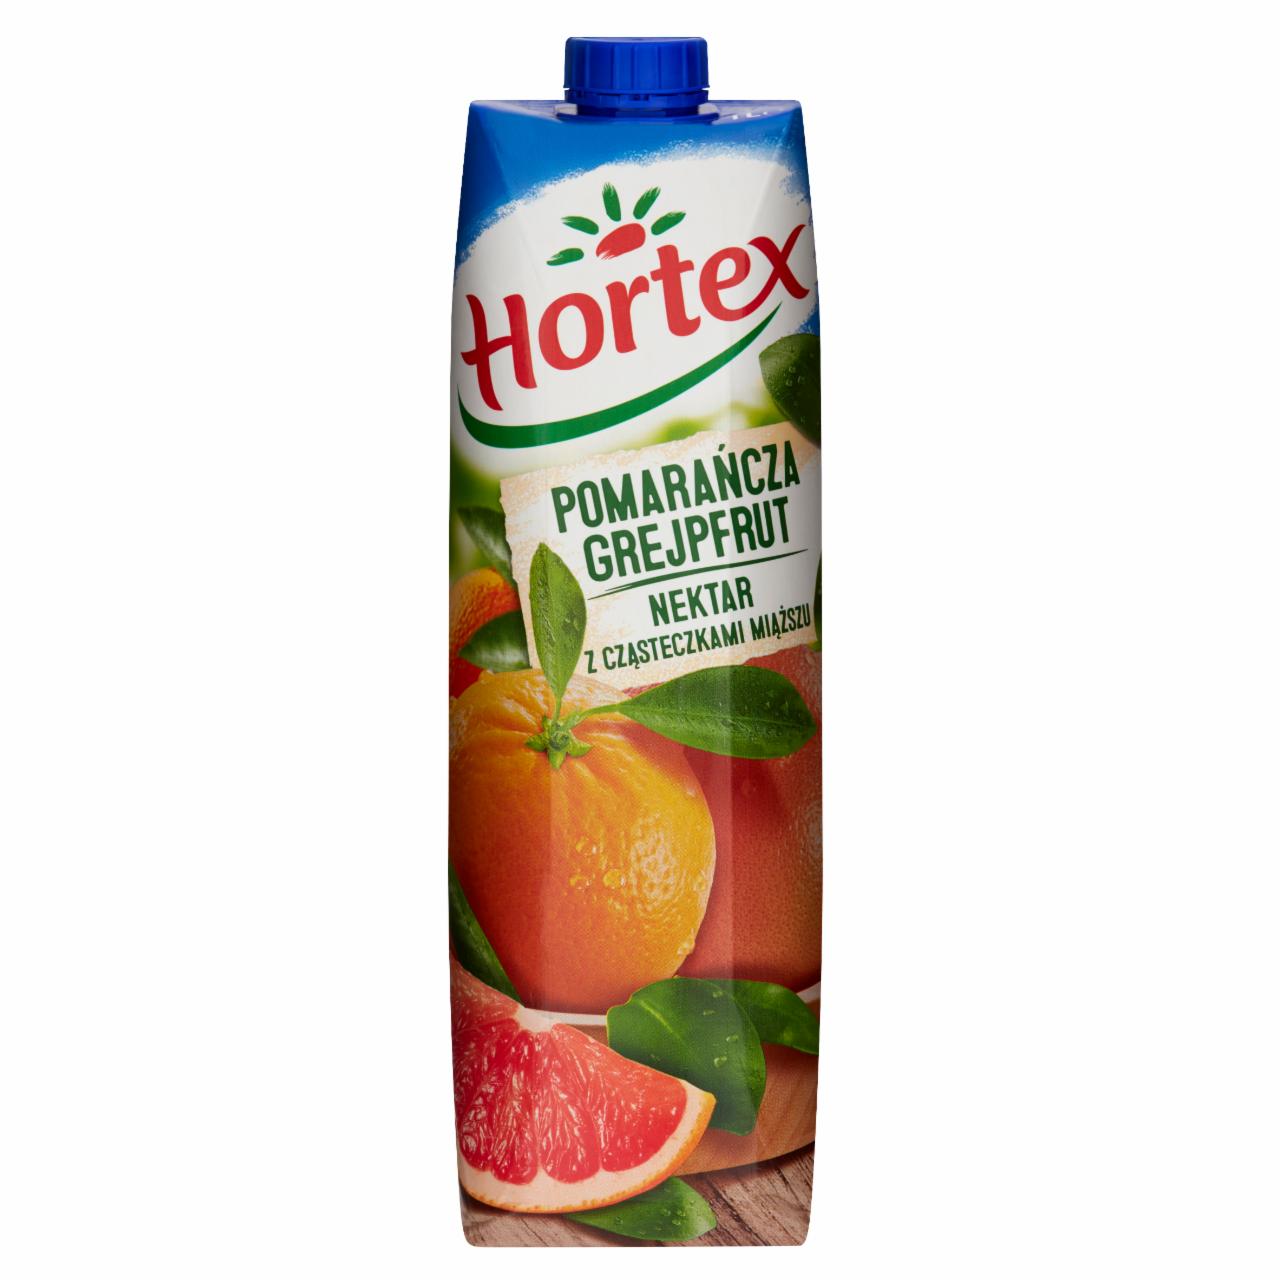 Zdjęcia - Hortex Nektar z cząsteczkami miąższu pomarańcza grejpfrut 1 l